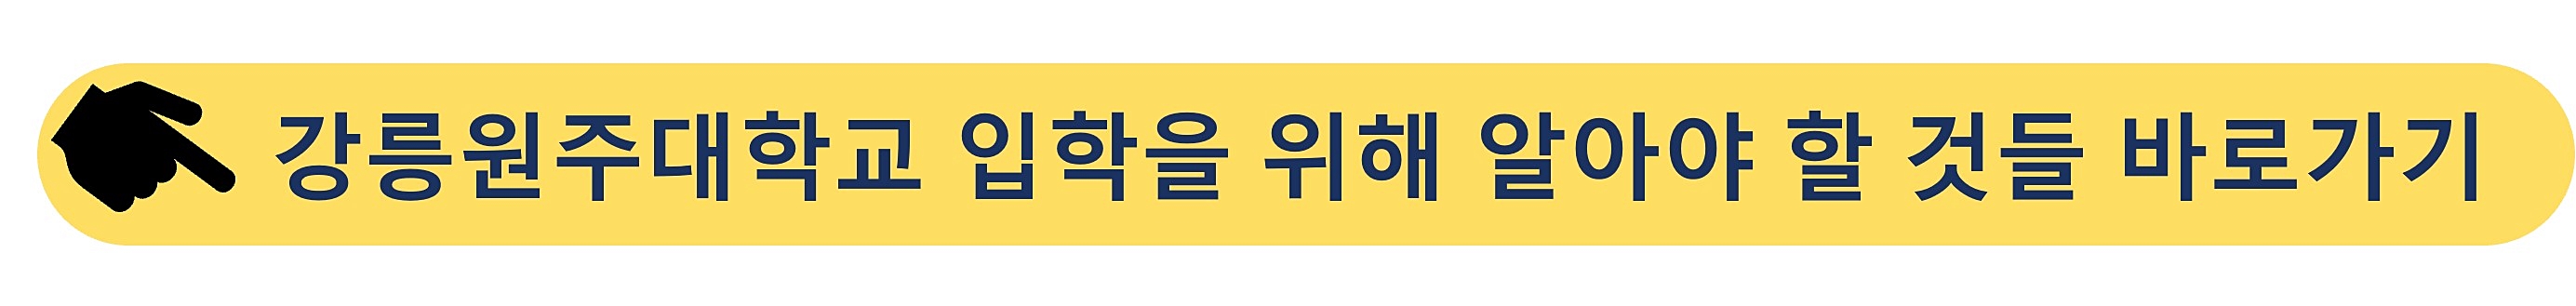 강릉원주대학교-입학